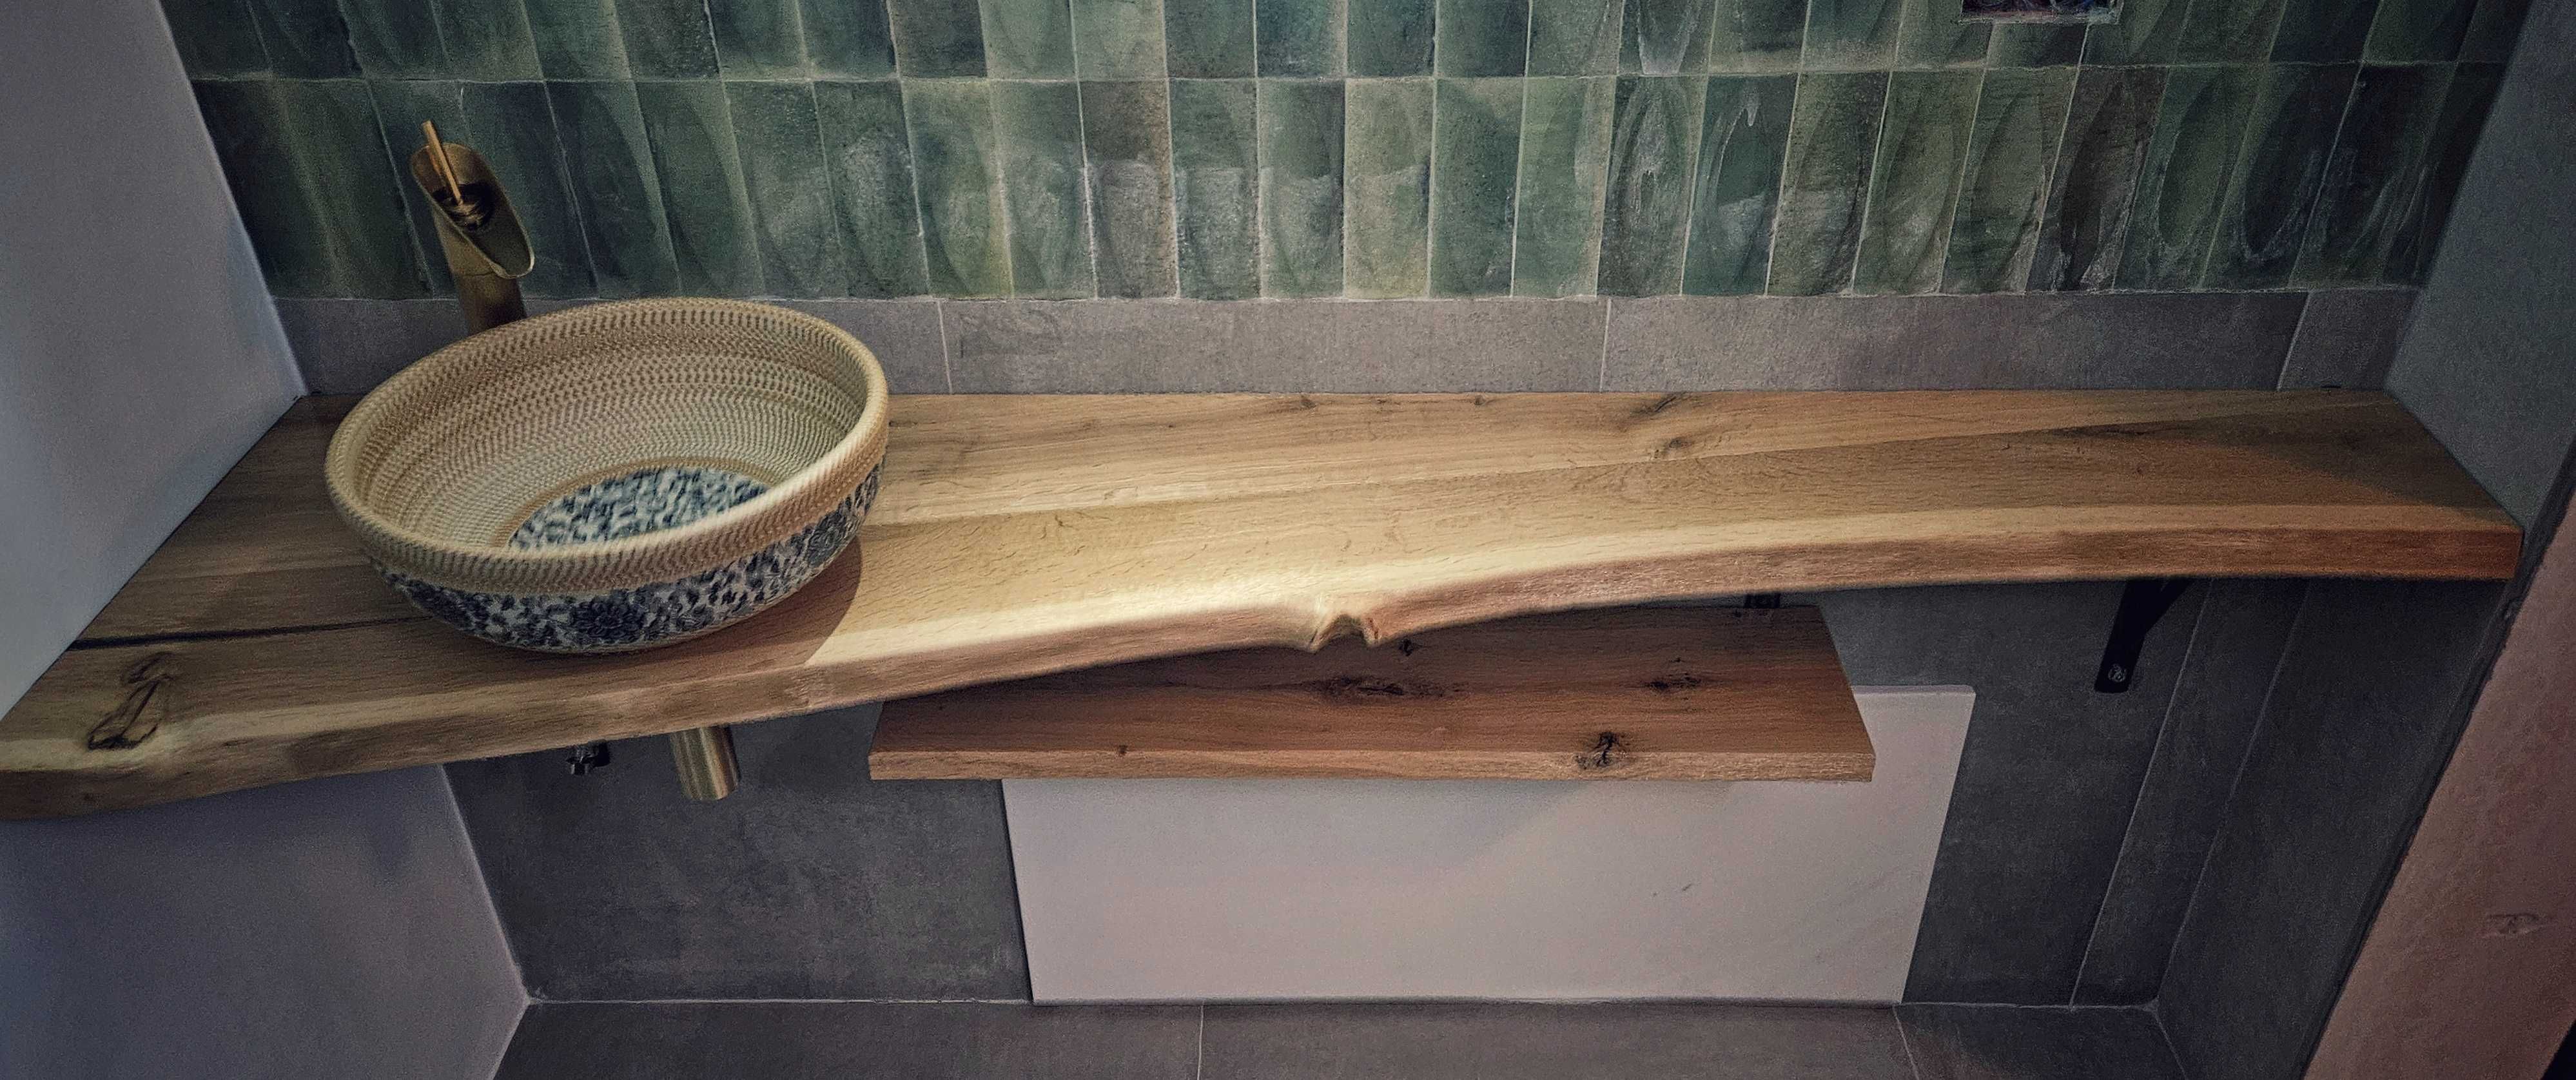 Blaturi din lemn pentru baie